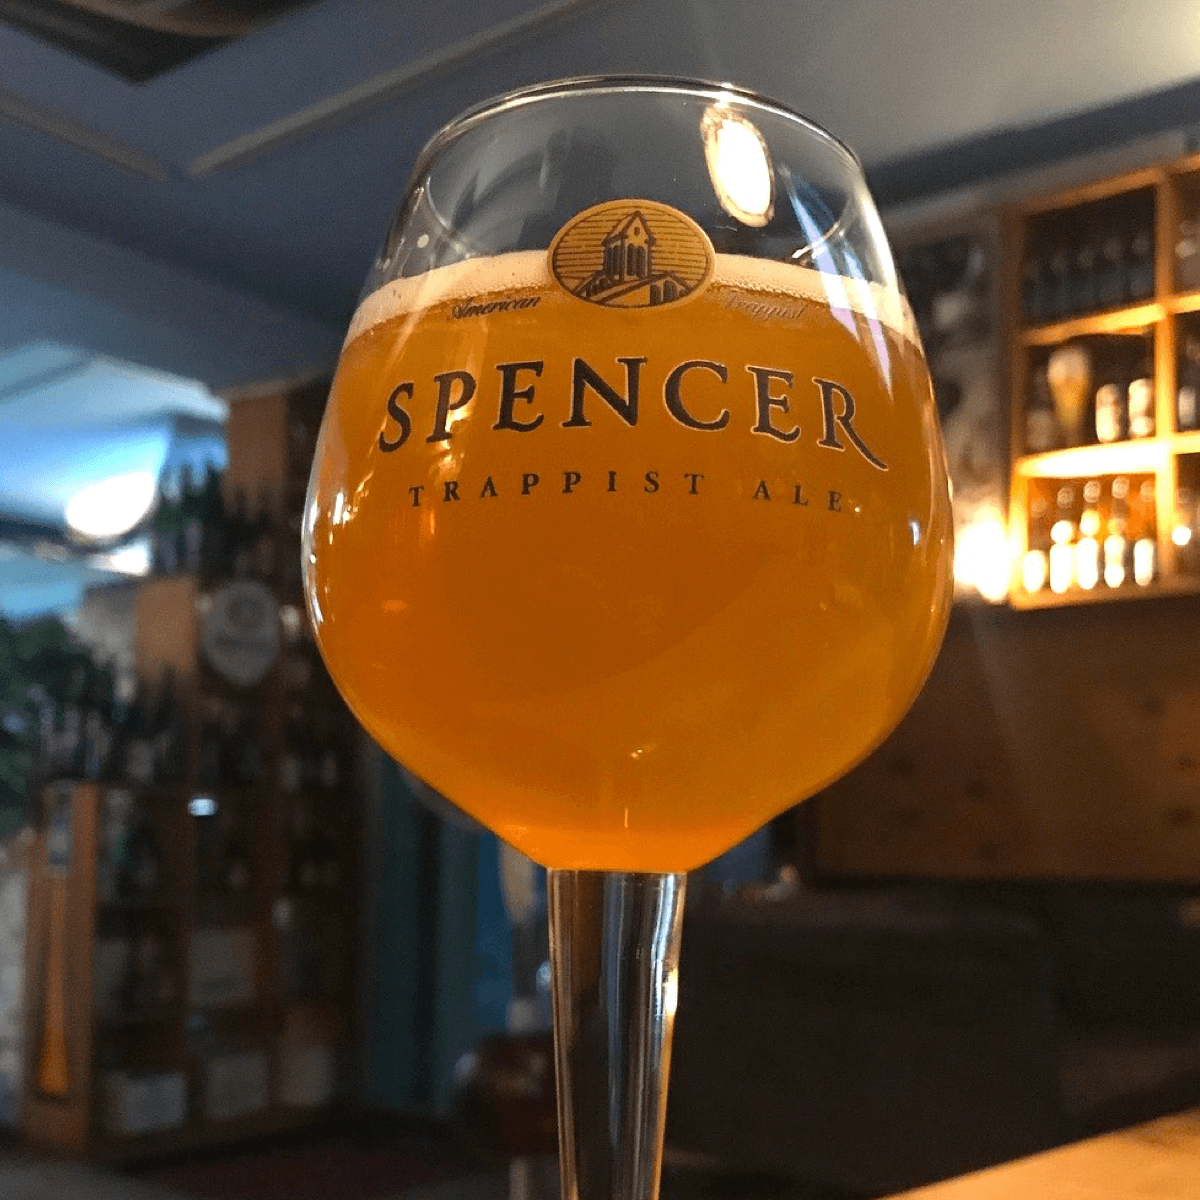 Un verre ou un calice de bière Spencer IPA se déguste toujours entre 6°C et 8°C ! - Crédit photo : @tjknet